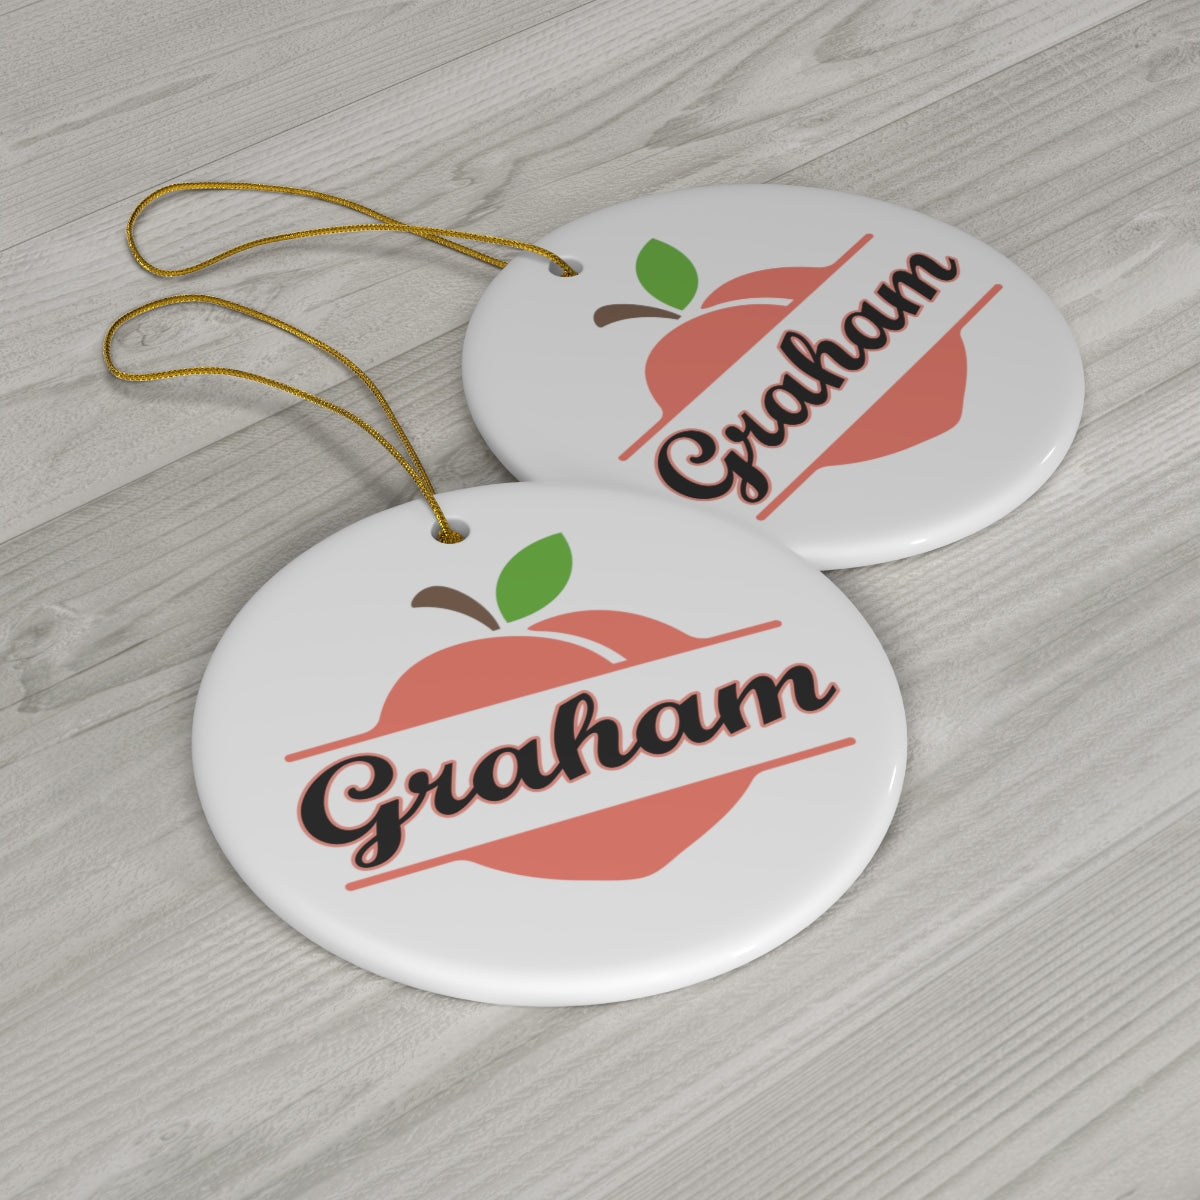 Graham Georgia Ceramic Ornament, 1-Pack